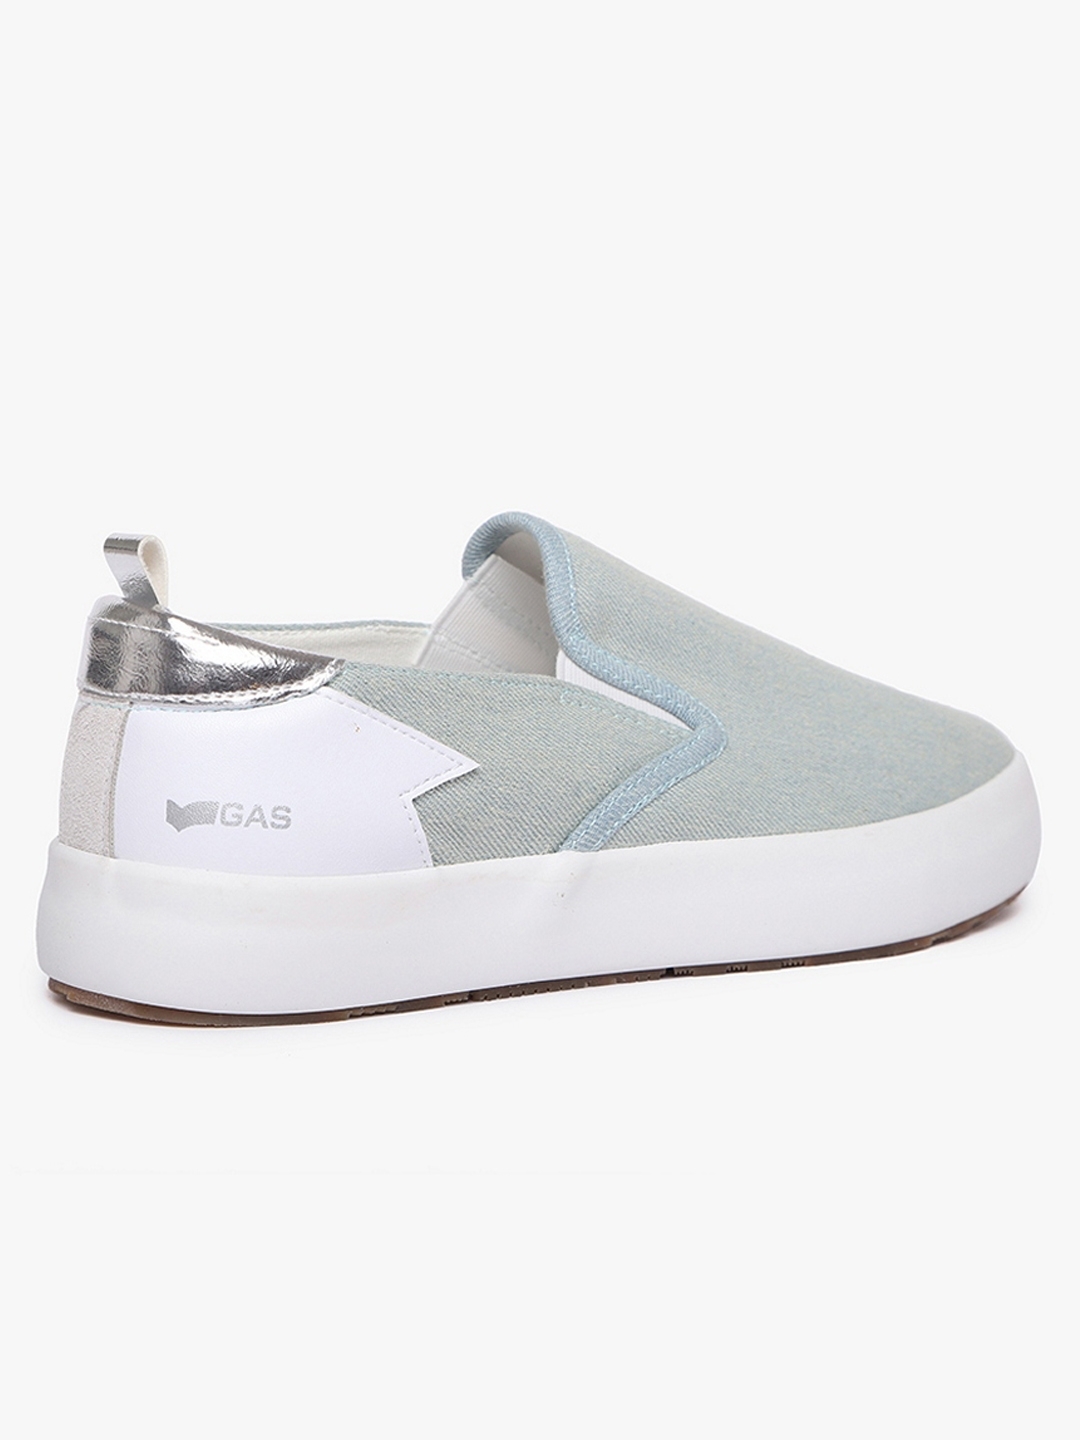 Women's slip on light blue Bella denim shoes